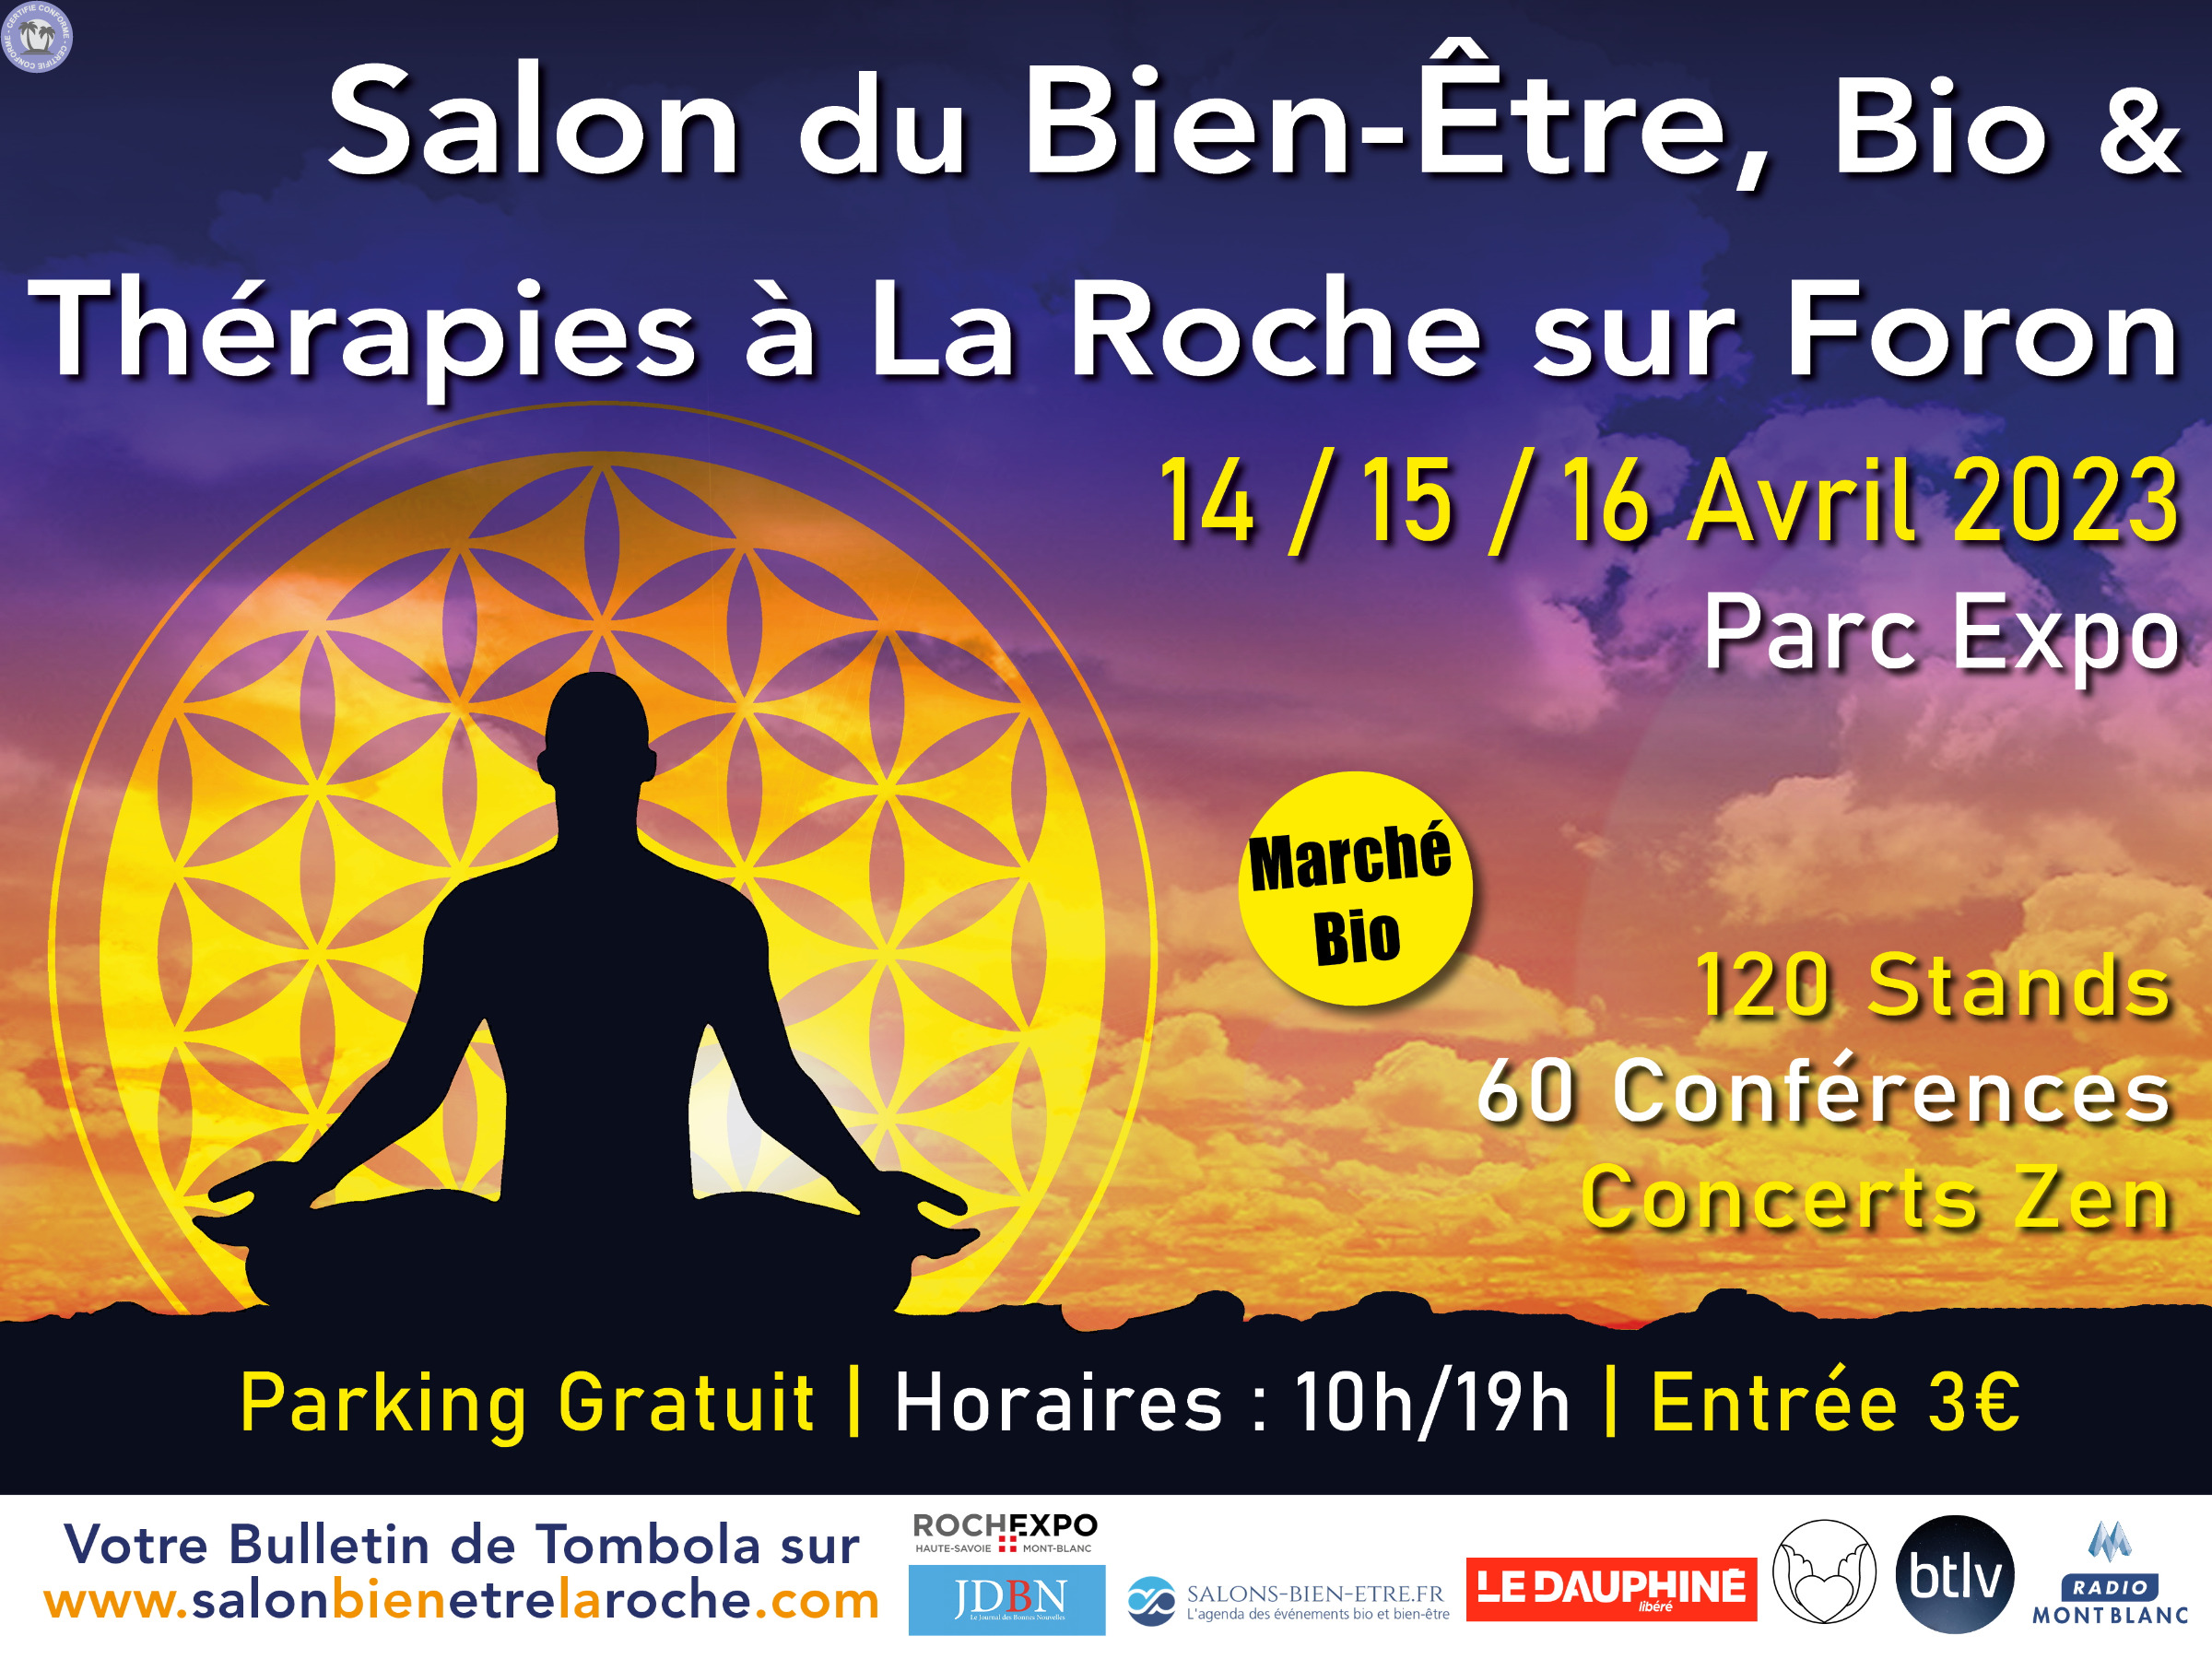 Salon du Bien Etre Bio & Thérapies La Roche sur Foron à La roche-sur-foron